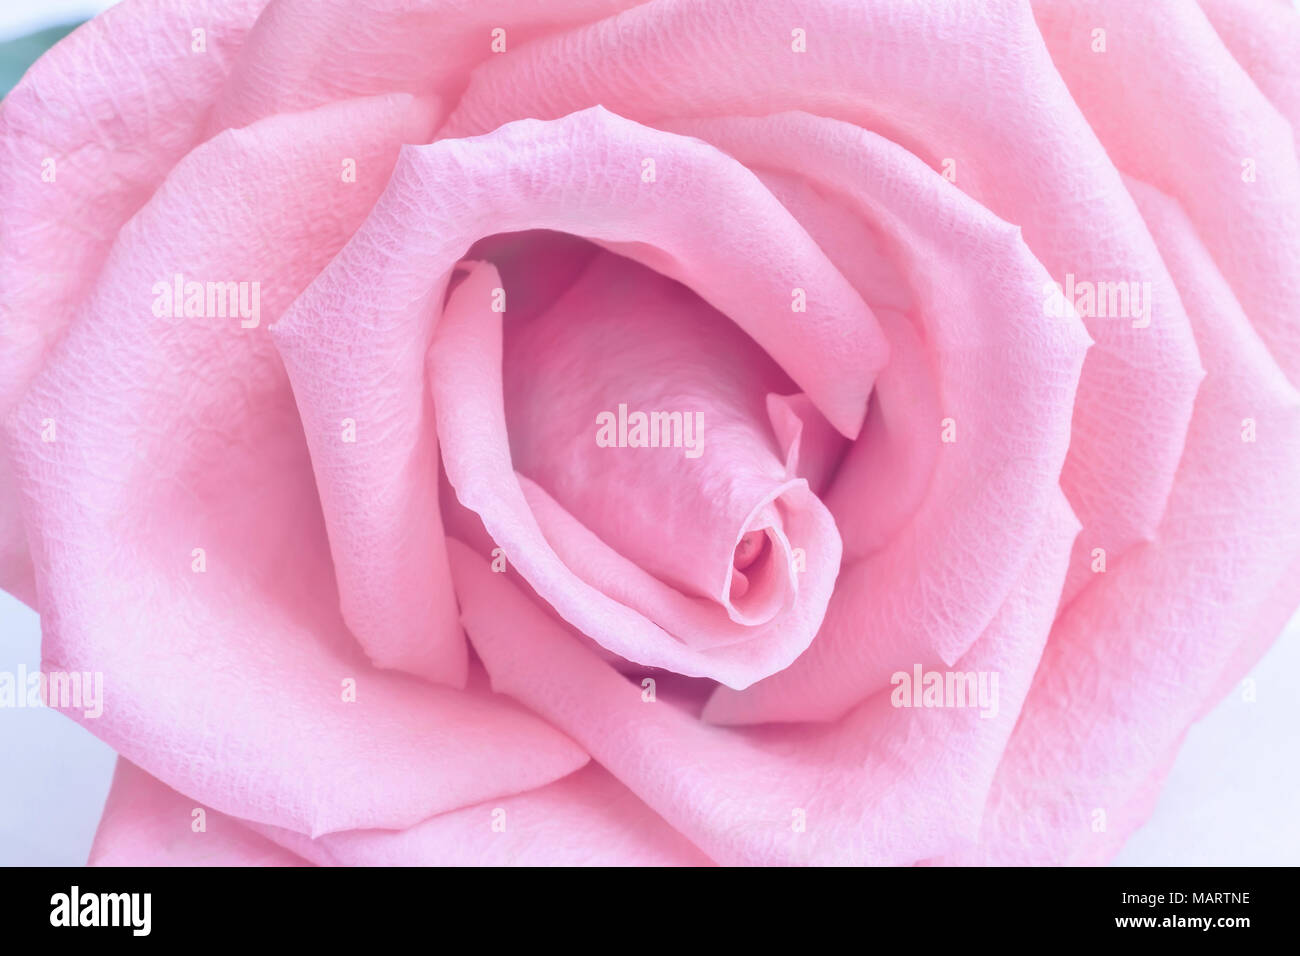 Die schönsten rote Rose. Nahaufnahme des Kerns einer Rose Stockfotografie -  Alamy